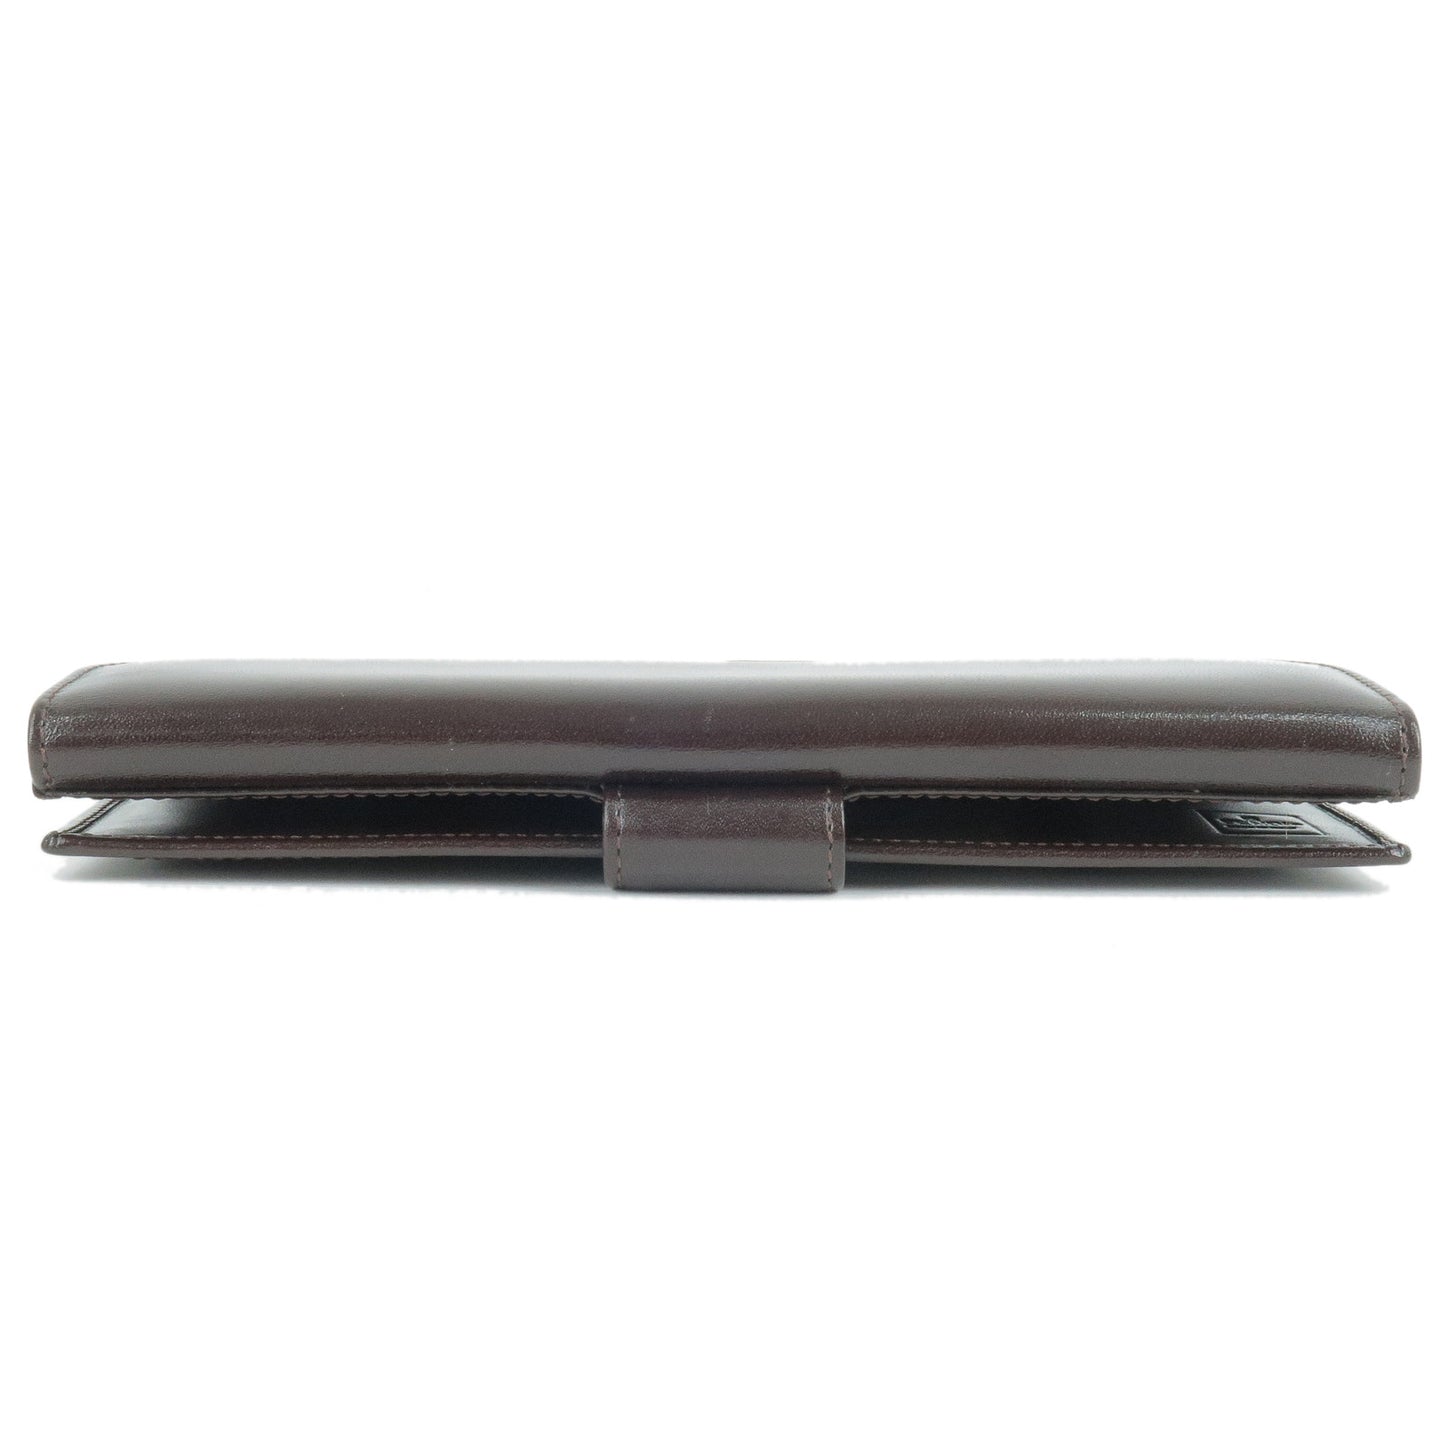 FENDI Zucca Canvas Leather Bi Fold Long Wallet Brown Khaki 01339